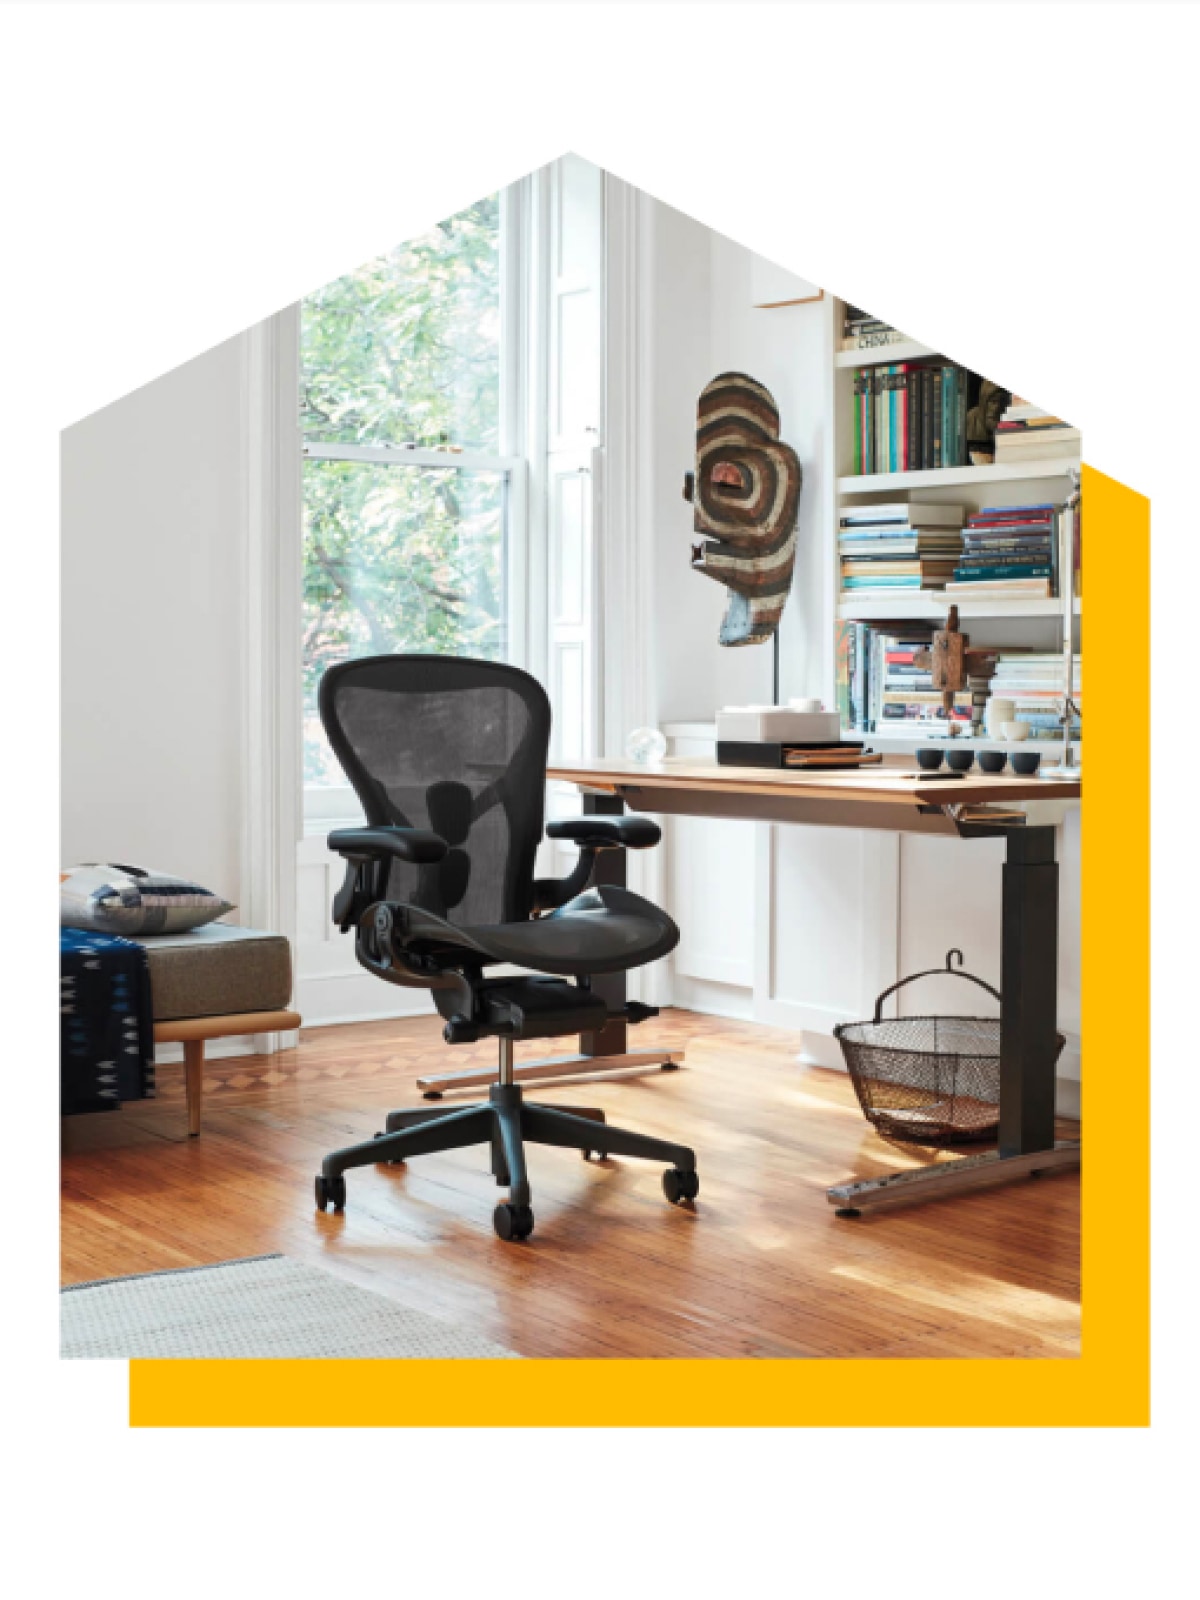 Graphite Aeron-stoel naast een zit-sta bureau. Het beeld is gewijzigd in een vorm van een huis en heeft erachter een heldere gele slagschaduw.